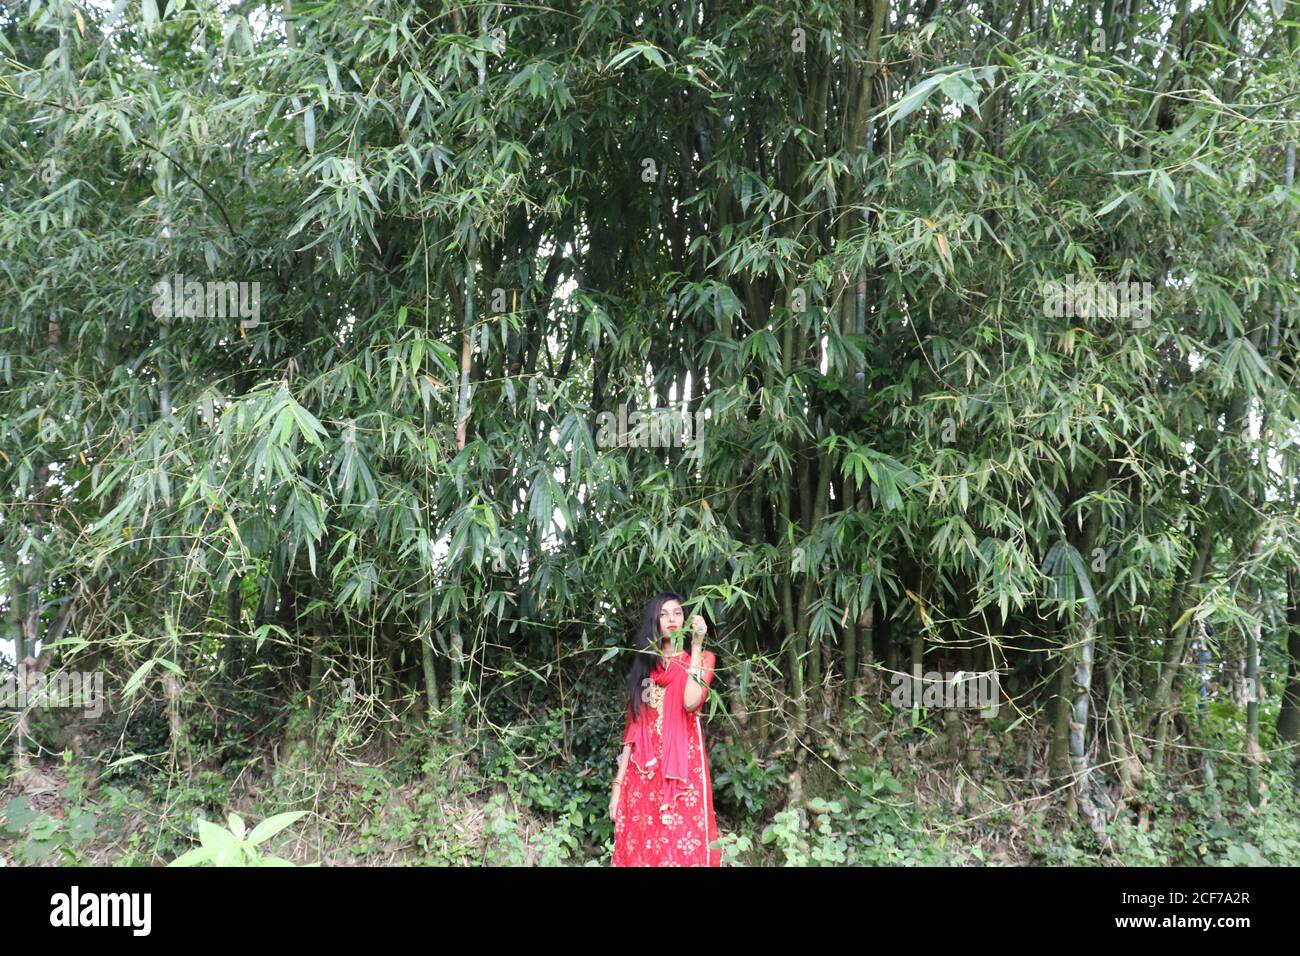 A red dress stunning girl stands under a bamboo garden Stock Photo